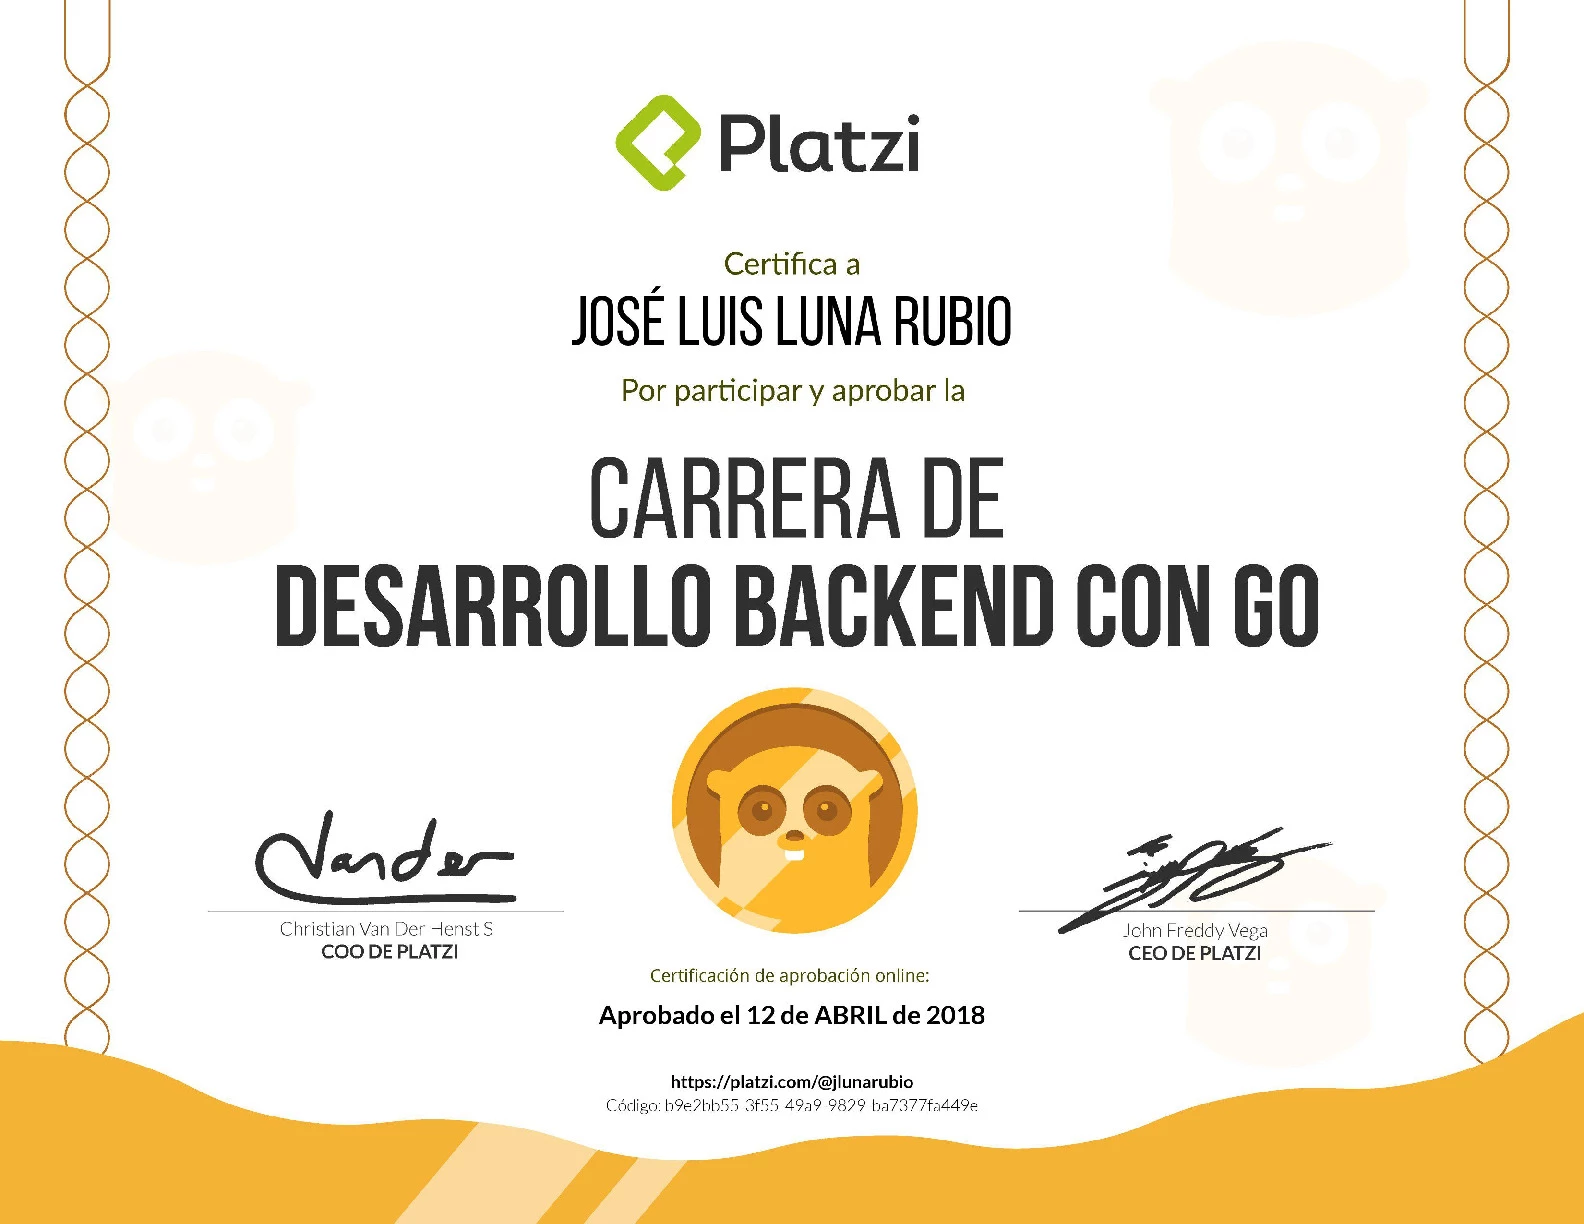 Carrera Platzi Jose Luis Luna Rubio - Backend  con GO